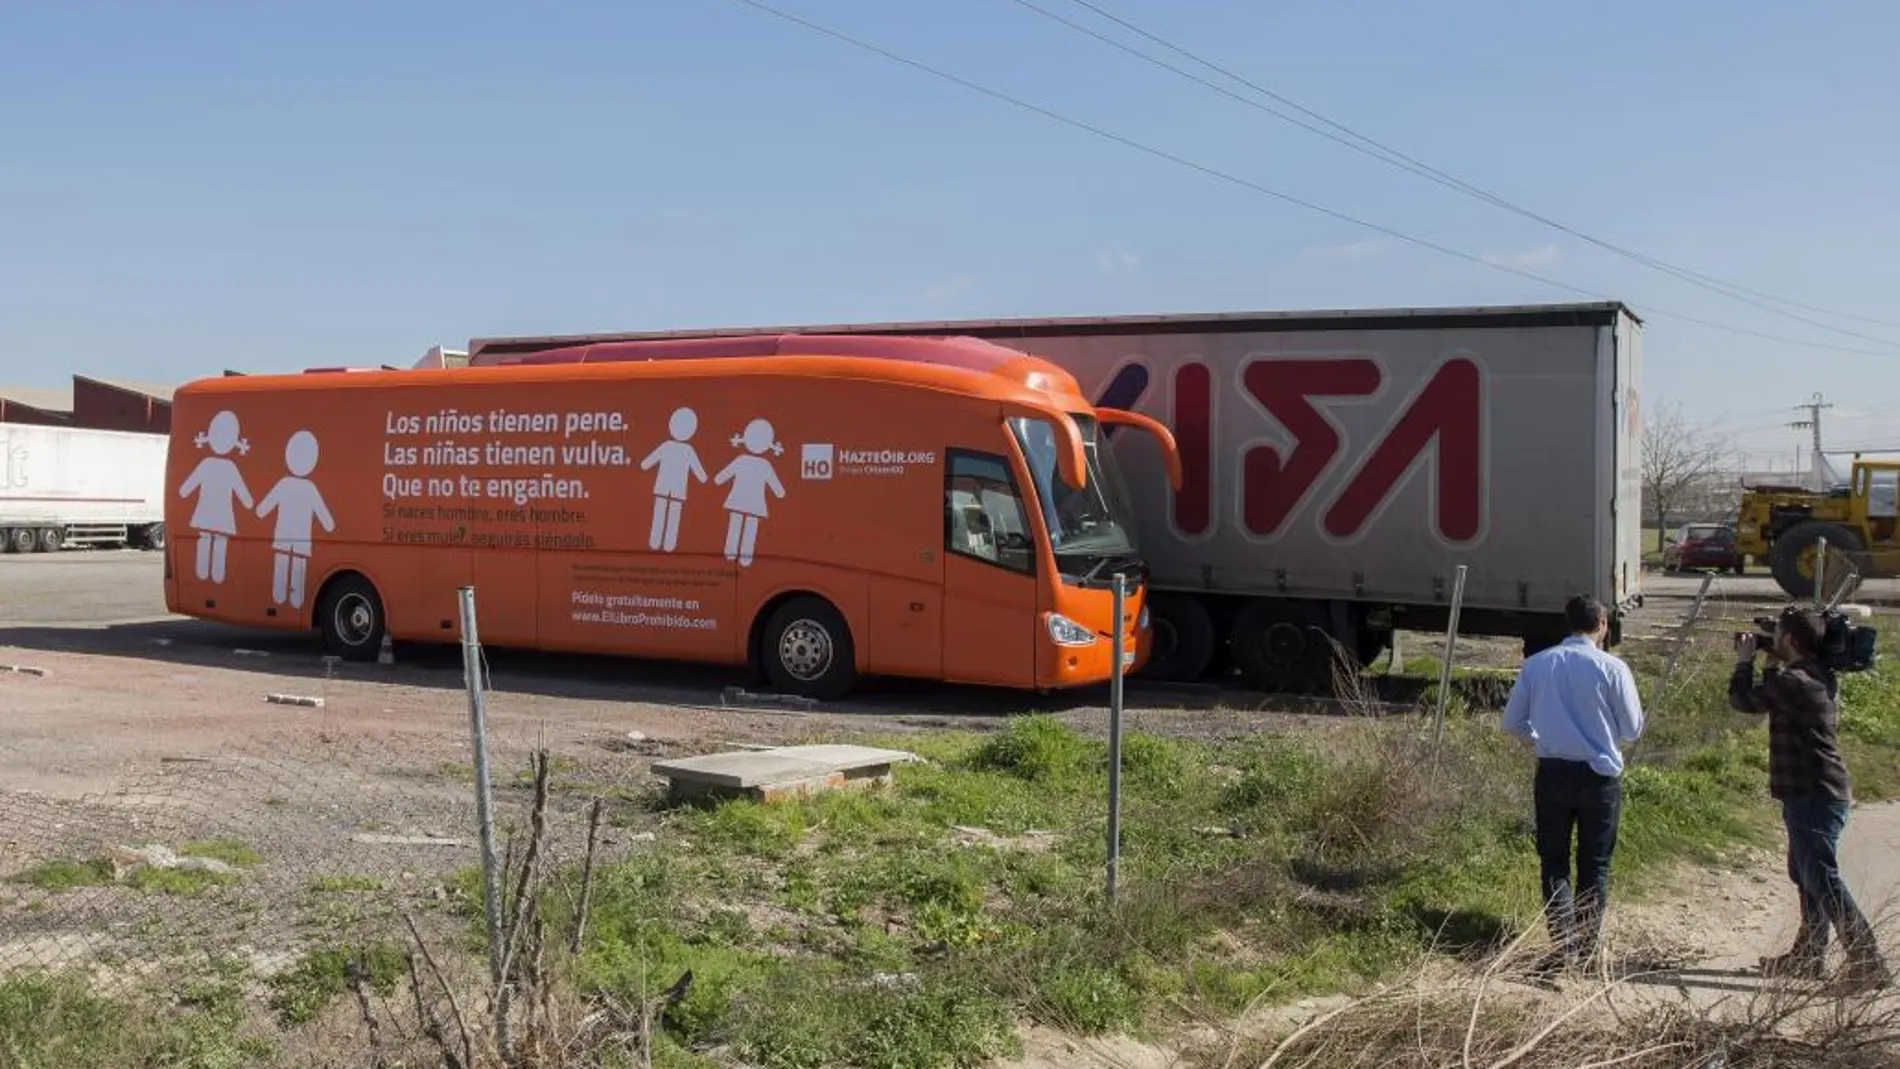 Autobús de la organización Hazteoir retenido en un aparcamiento de la localidad madrileña de Coslada.